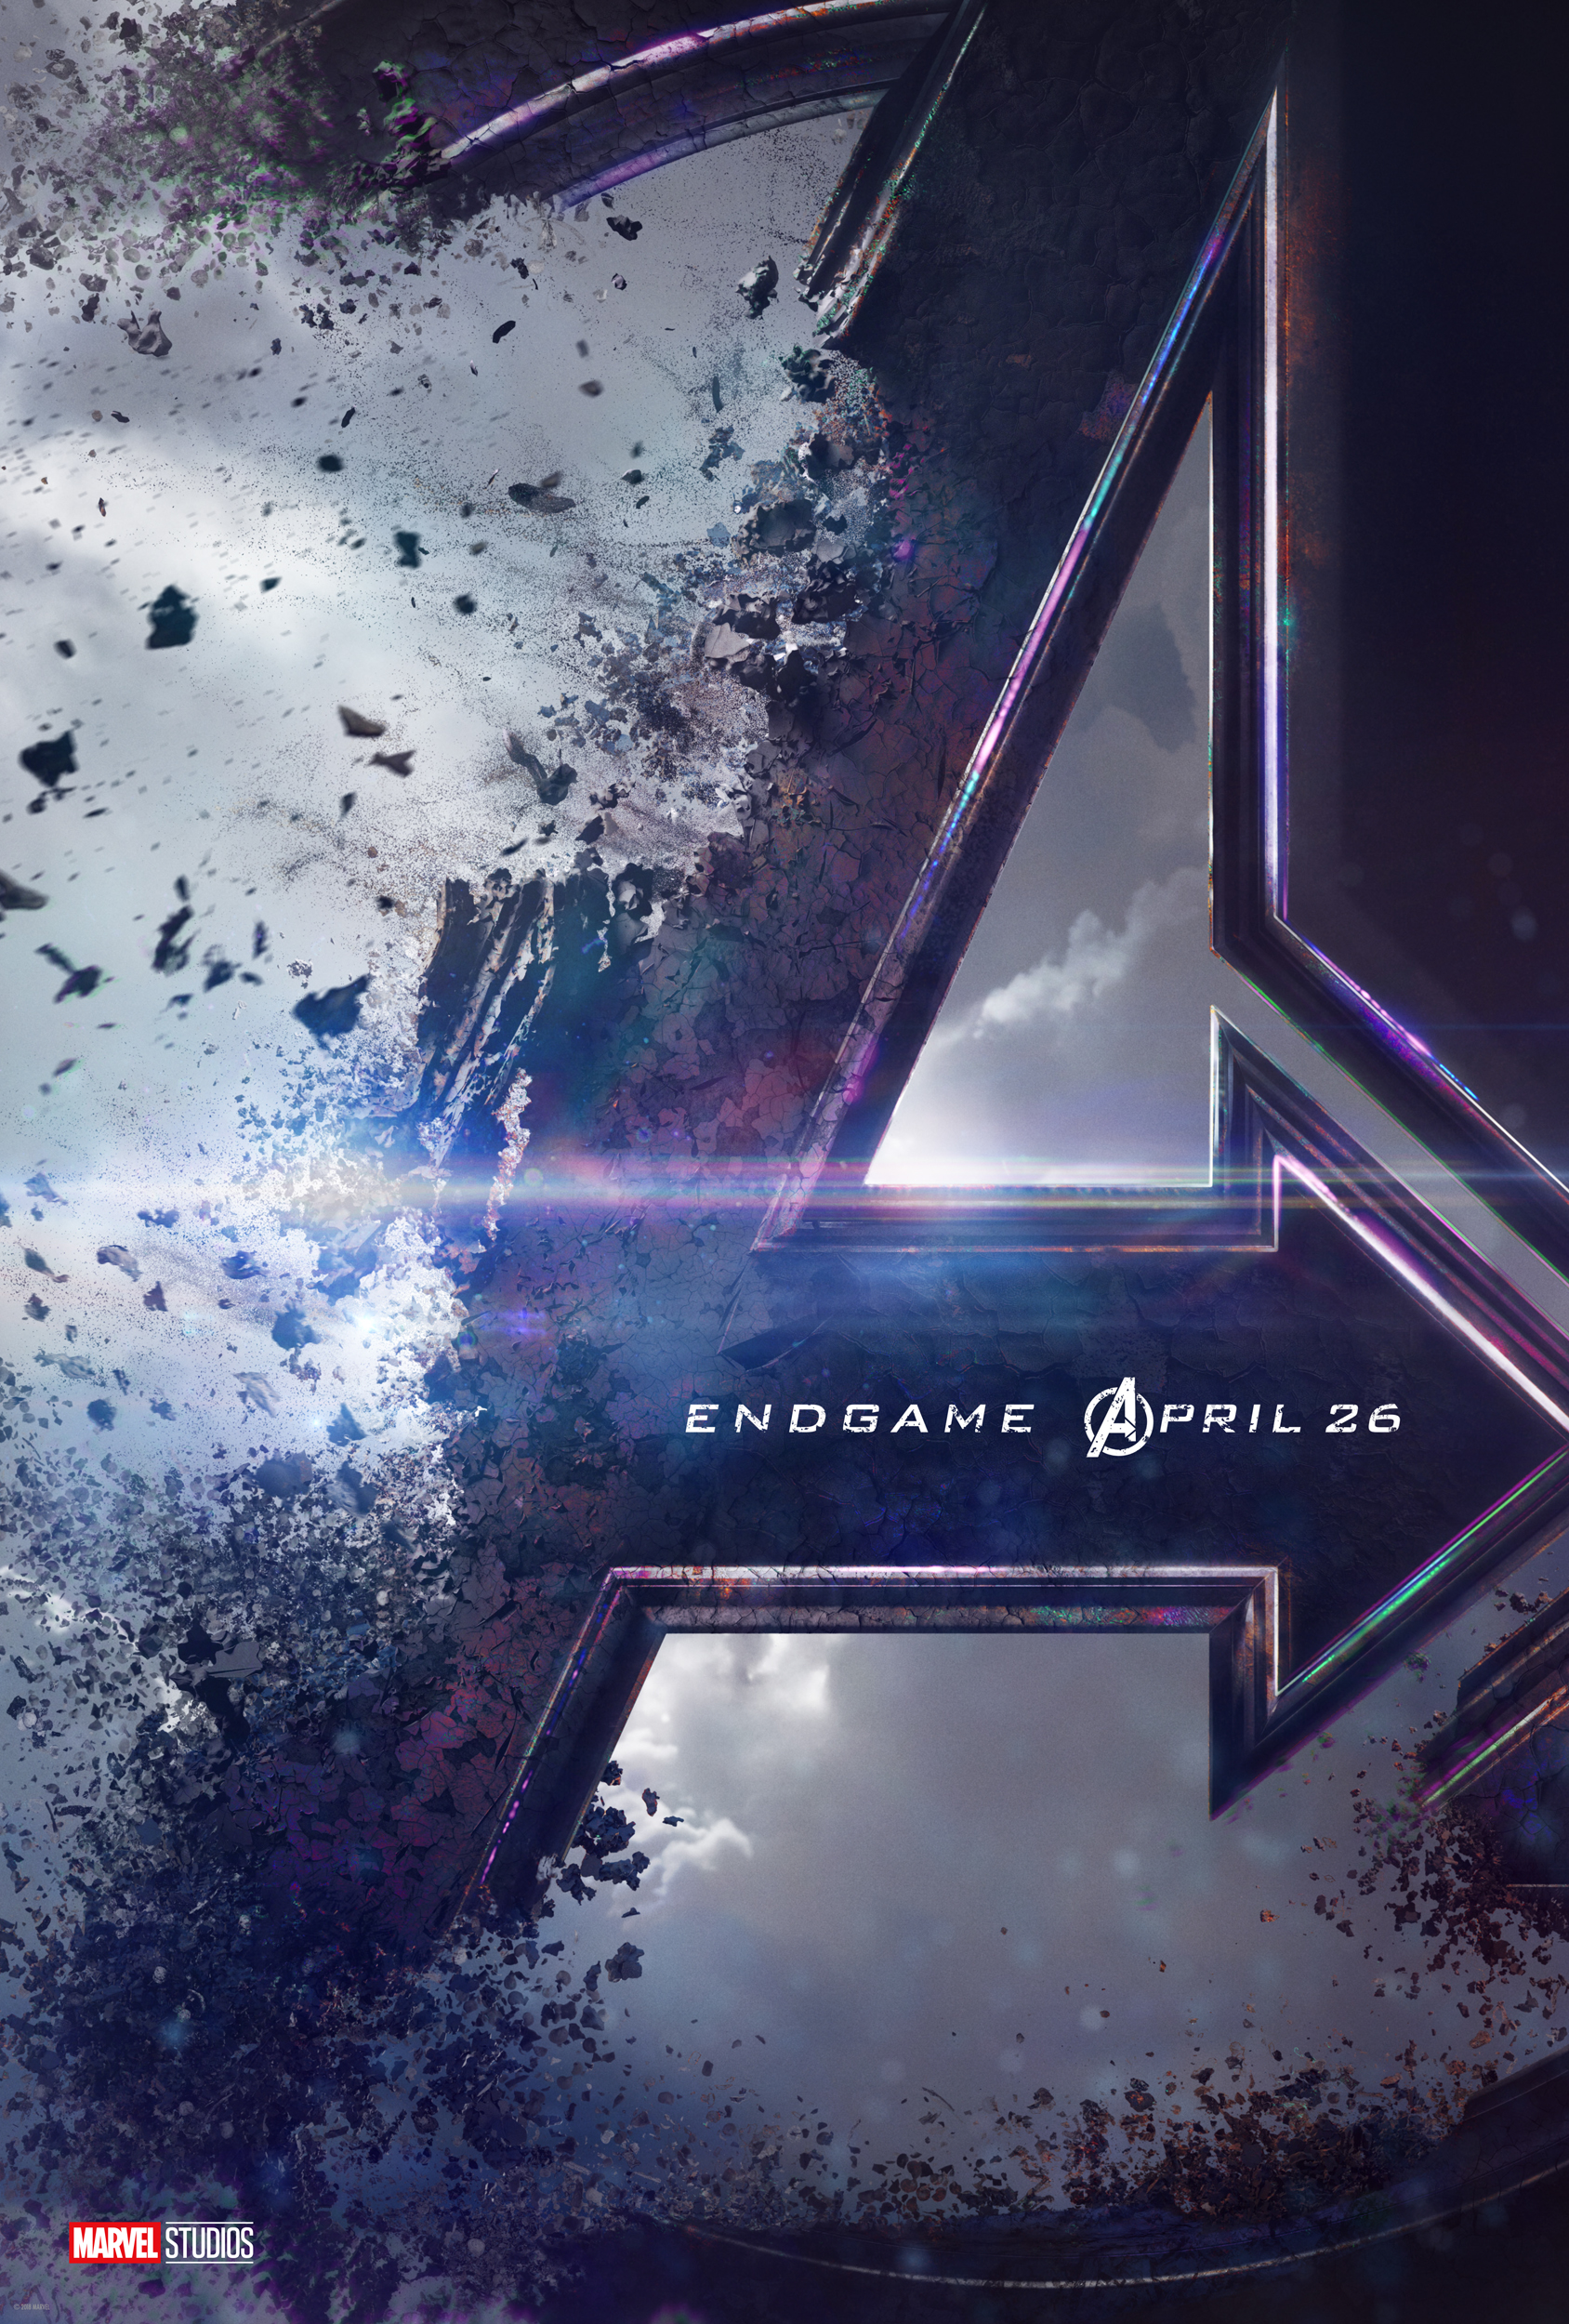 Endgame Poster Background